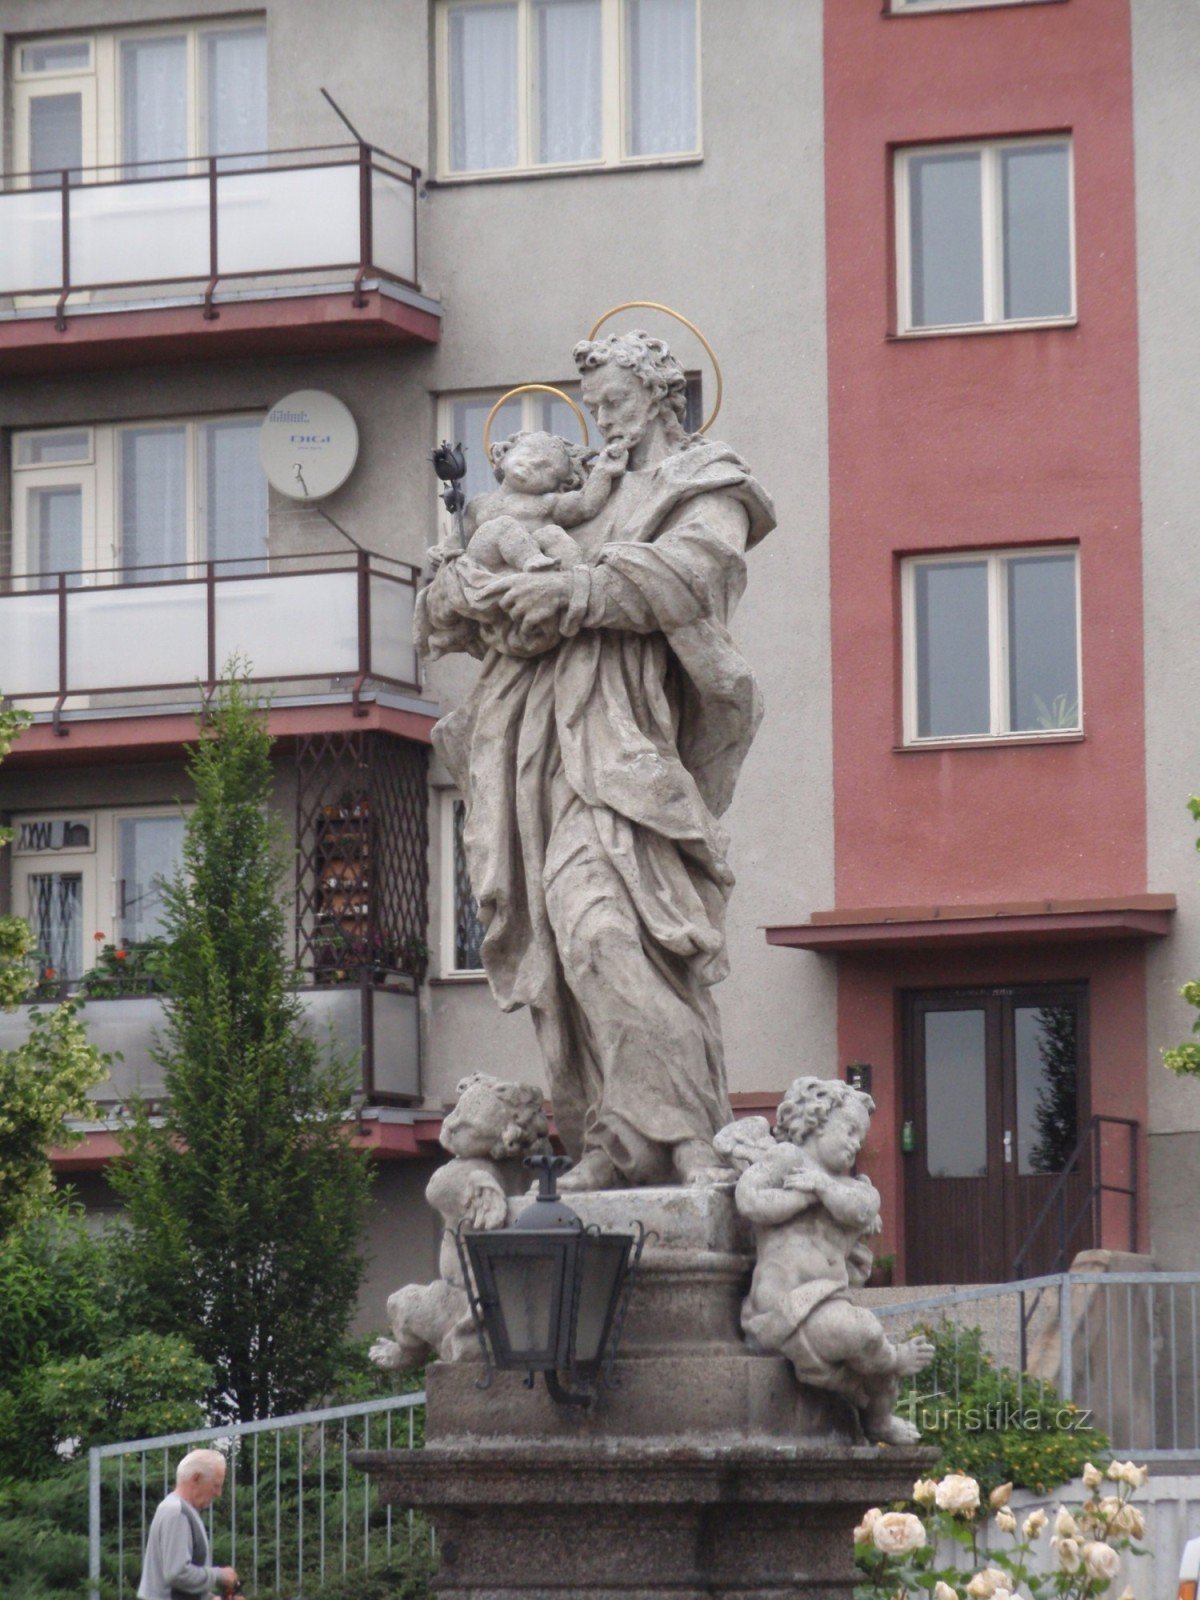 聖の像『Velké Meziříčí』でヨセフと幼子イエス